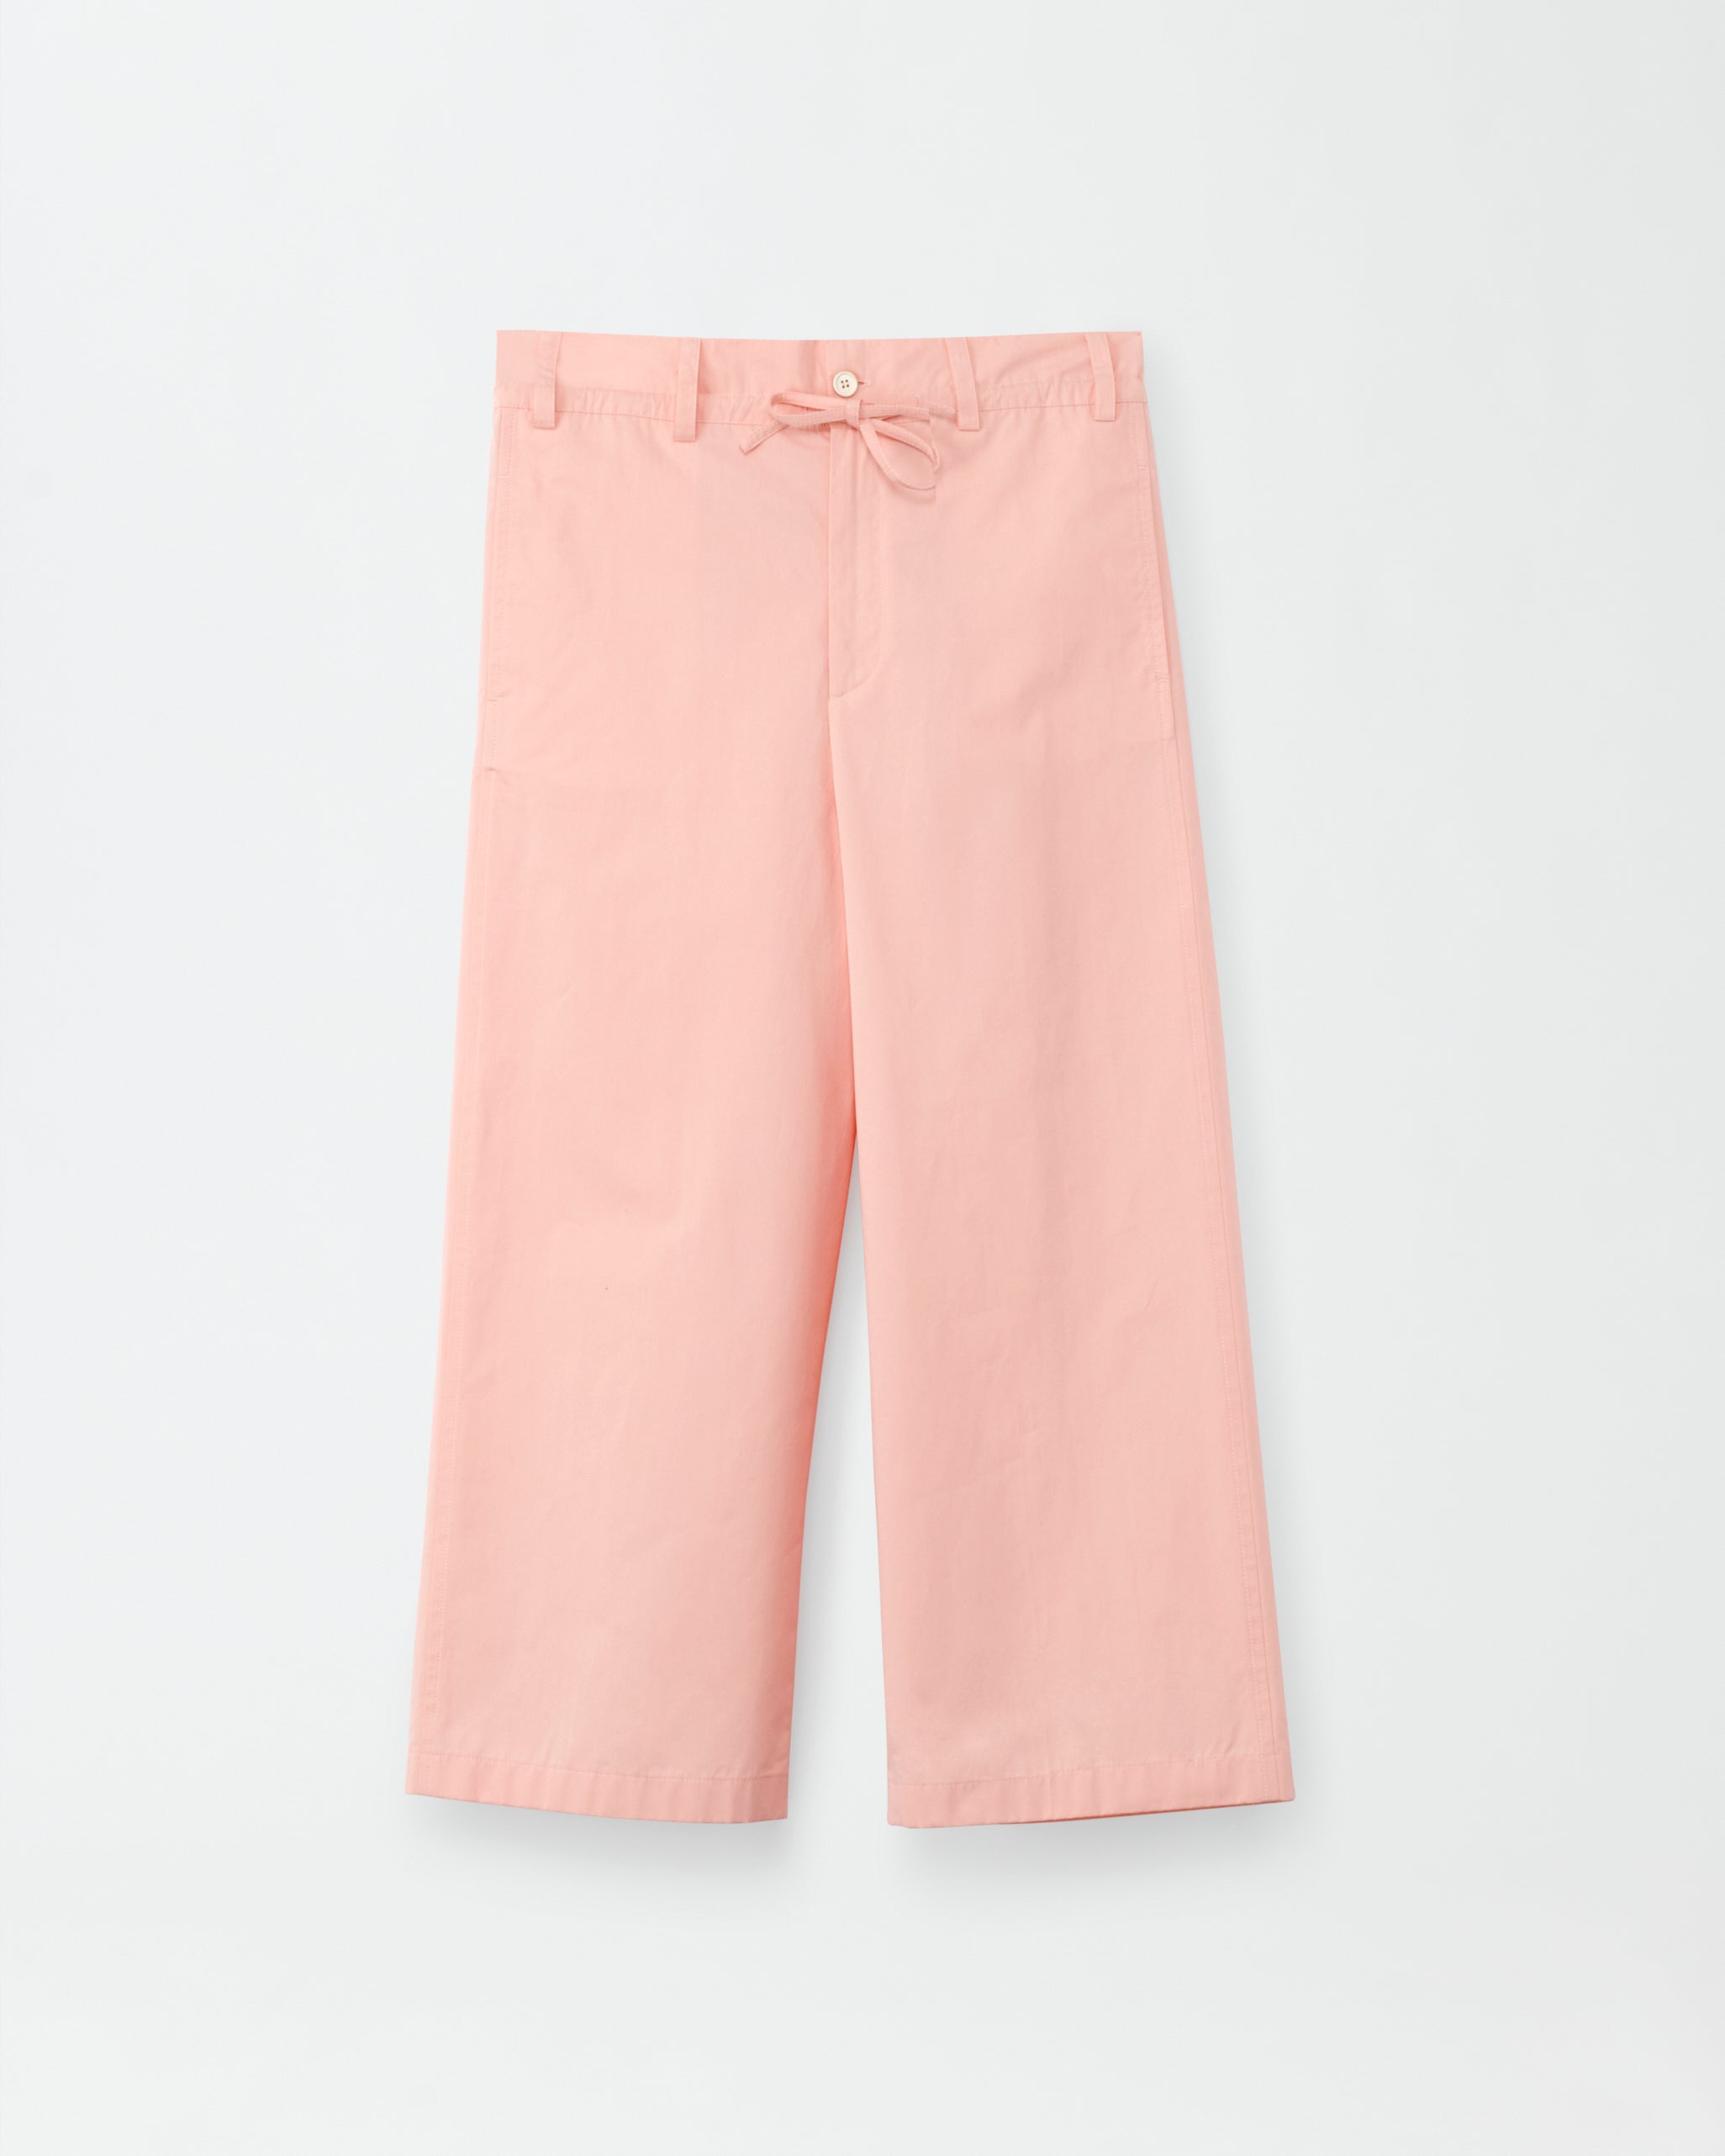 Poplin trousers, macaron pink